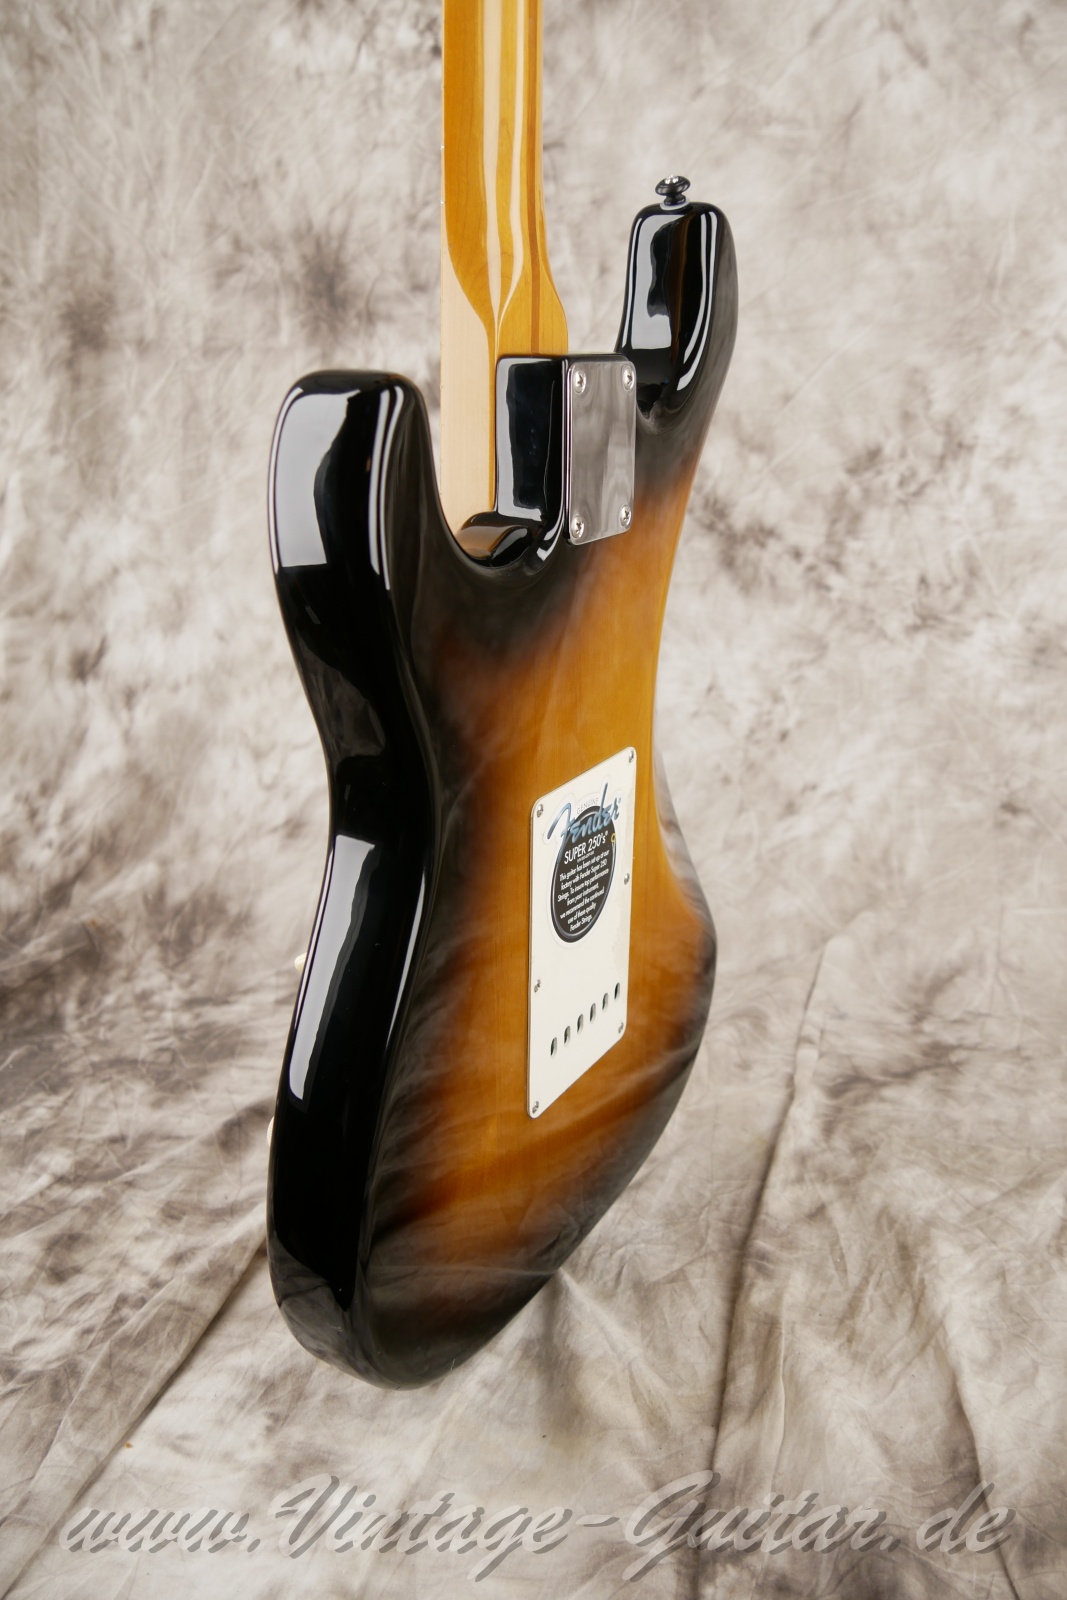 Fener-Stratocaster-Classic-player-series-50s-2007-sunburst-011.jpg